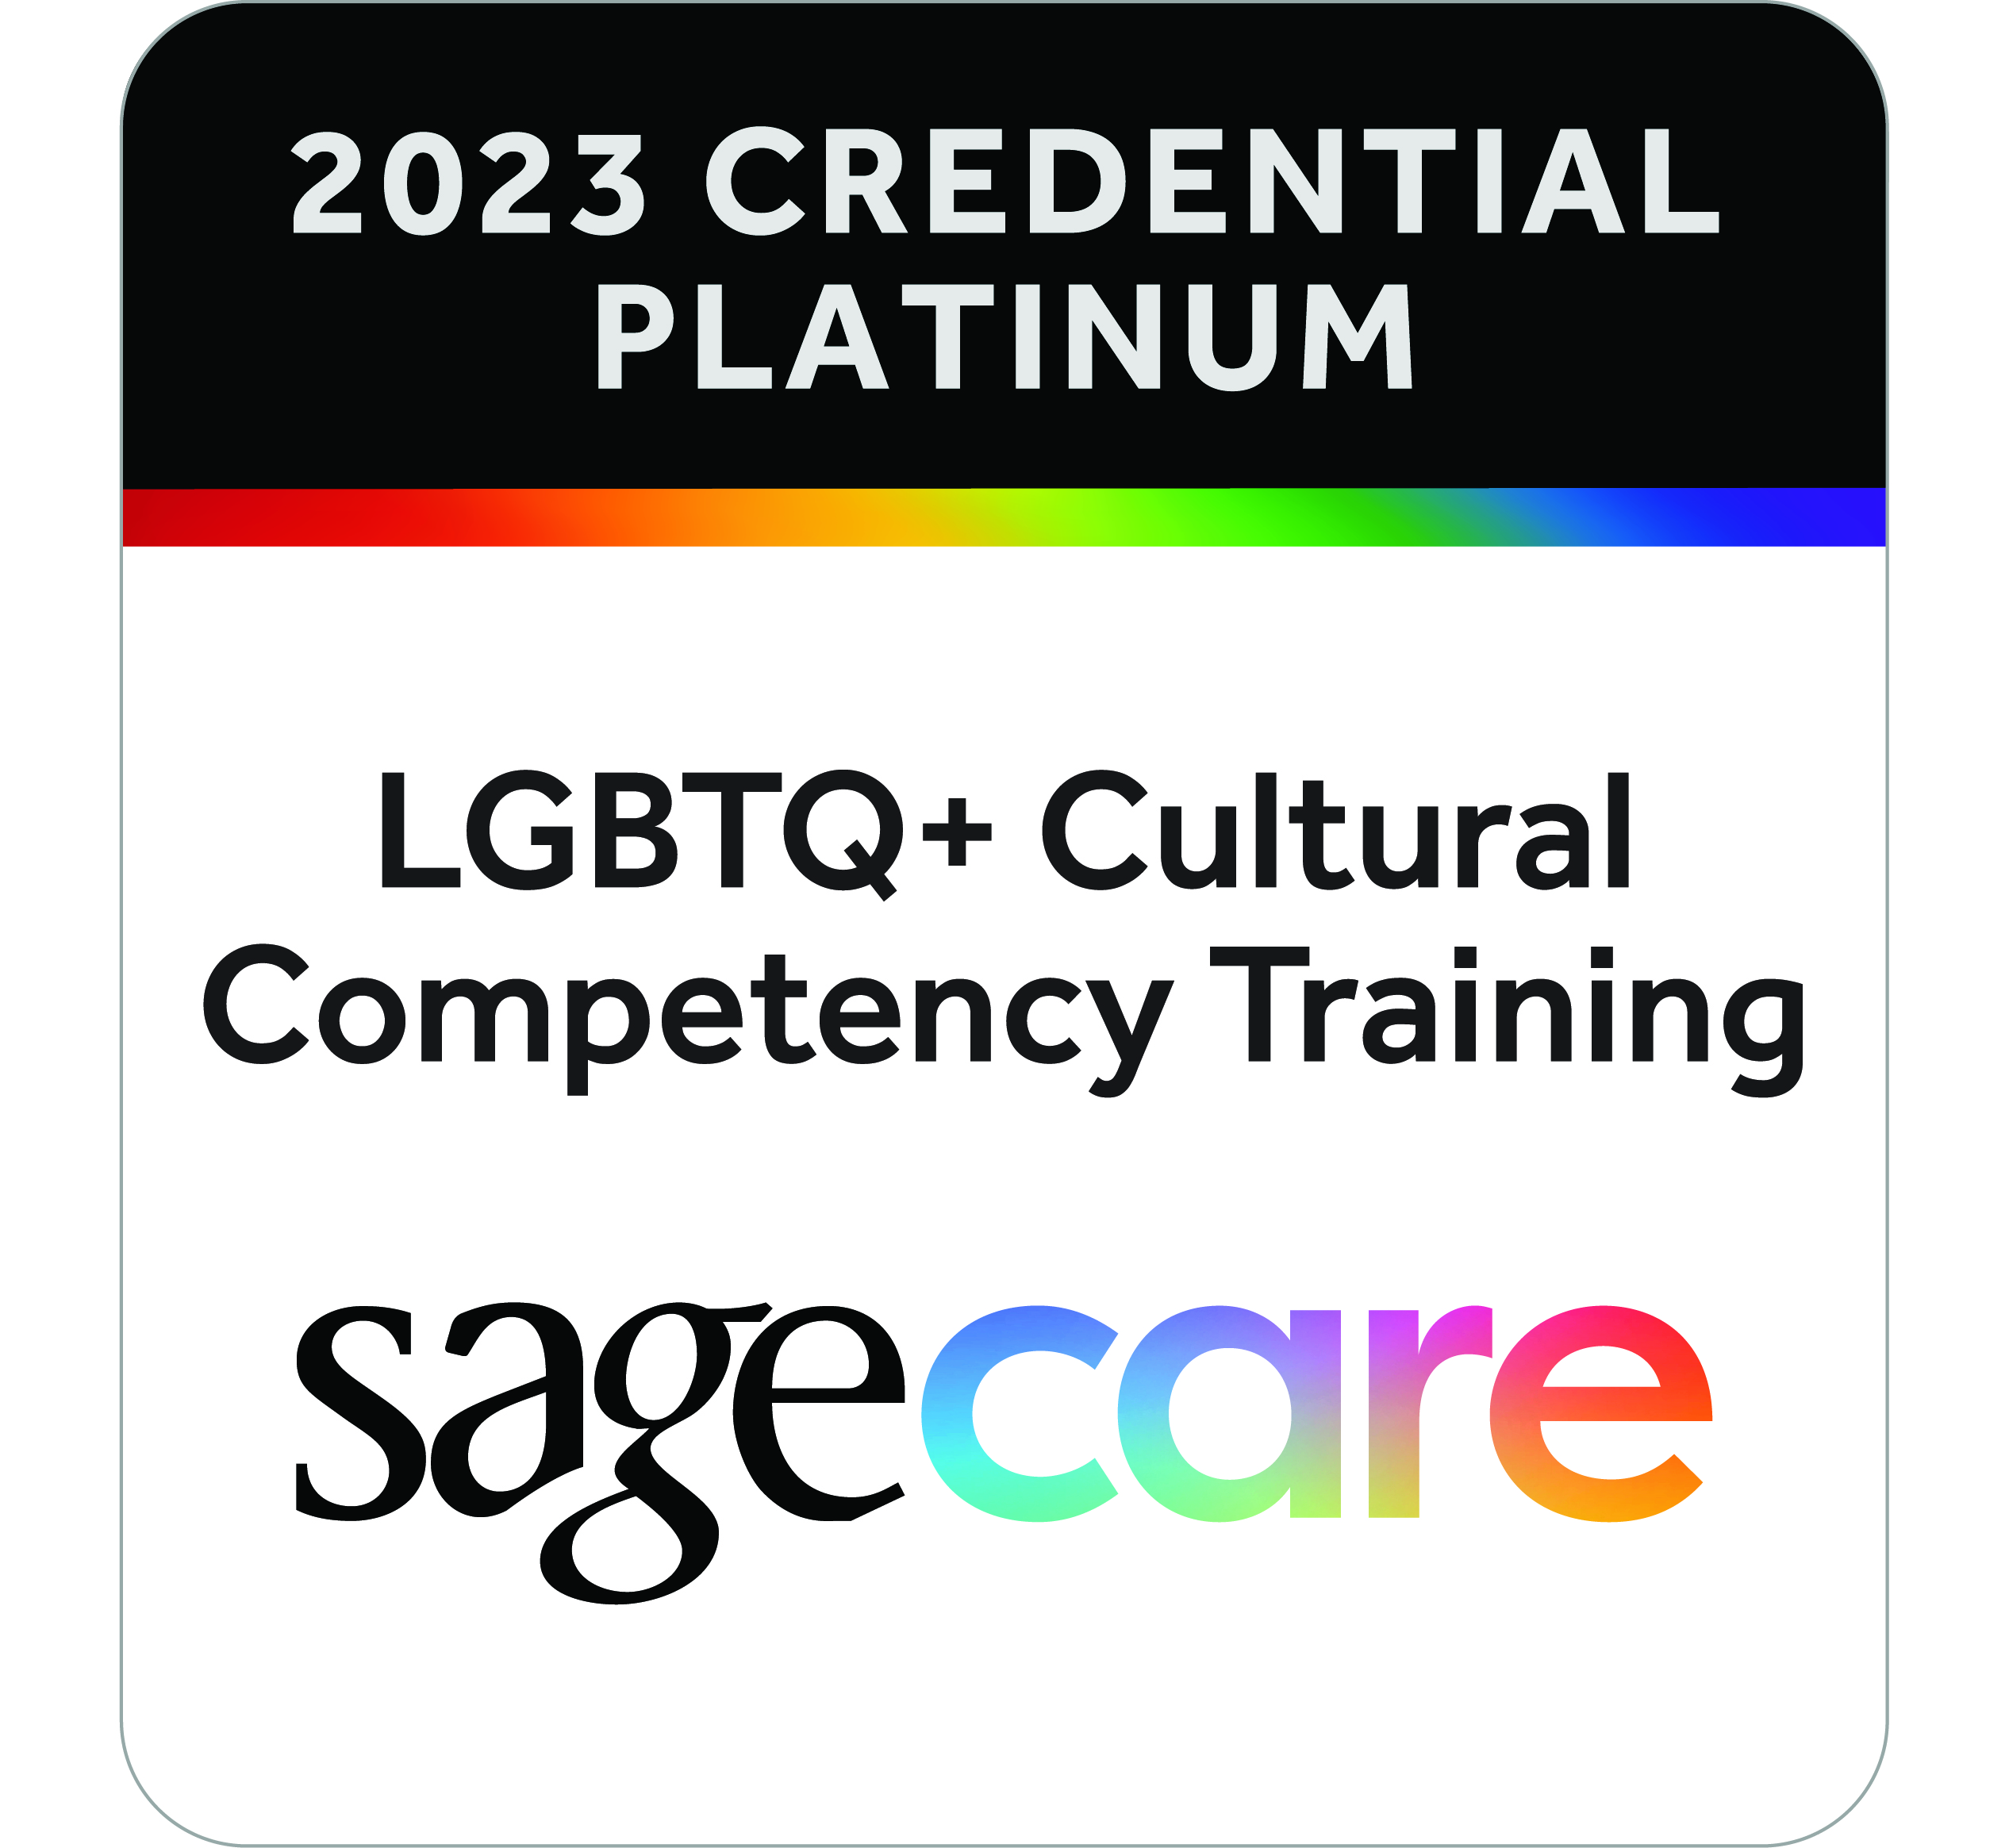 SAGE-CARE Platinum Credential 2023